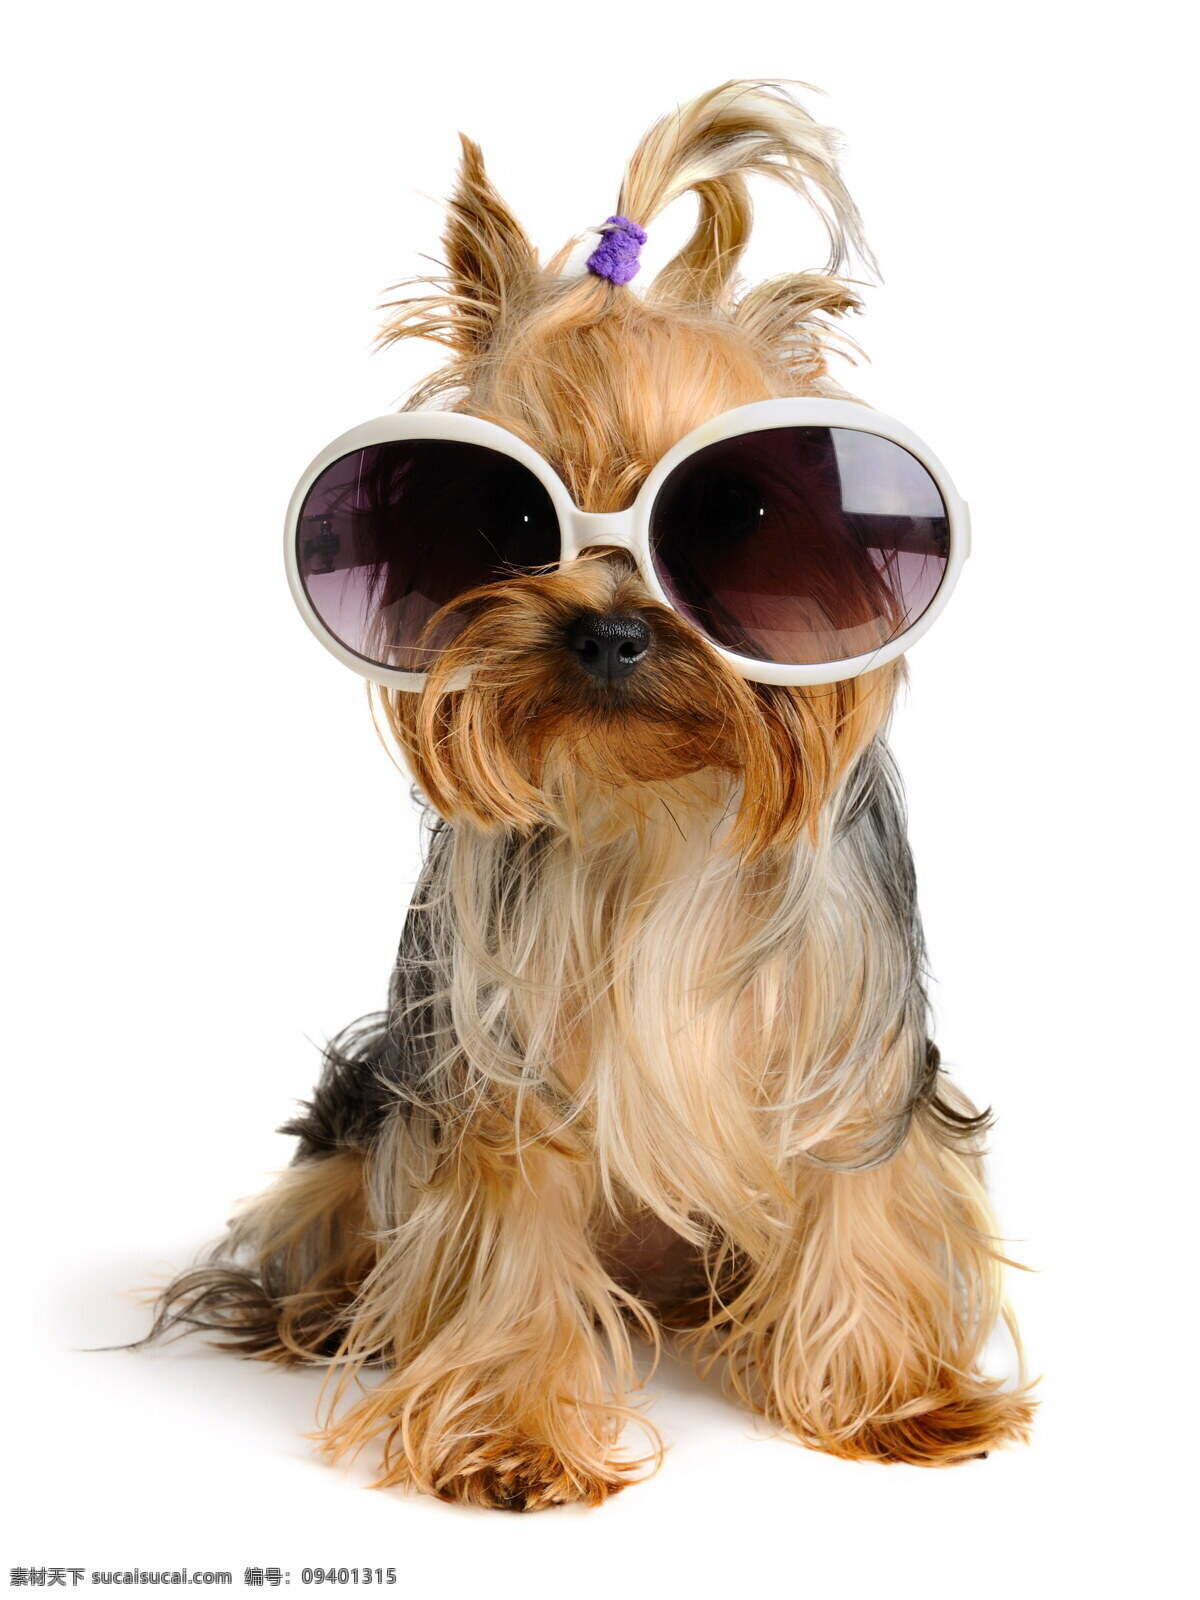 戴 眼镜 小狗 戴眼镜的小狗 宠物狗 可爱小狗 动物世界 狗狗图片 生物世界